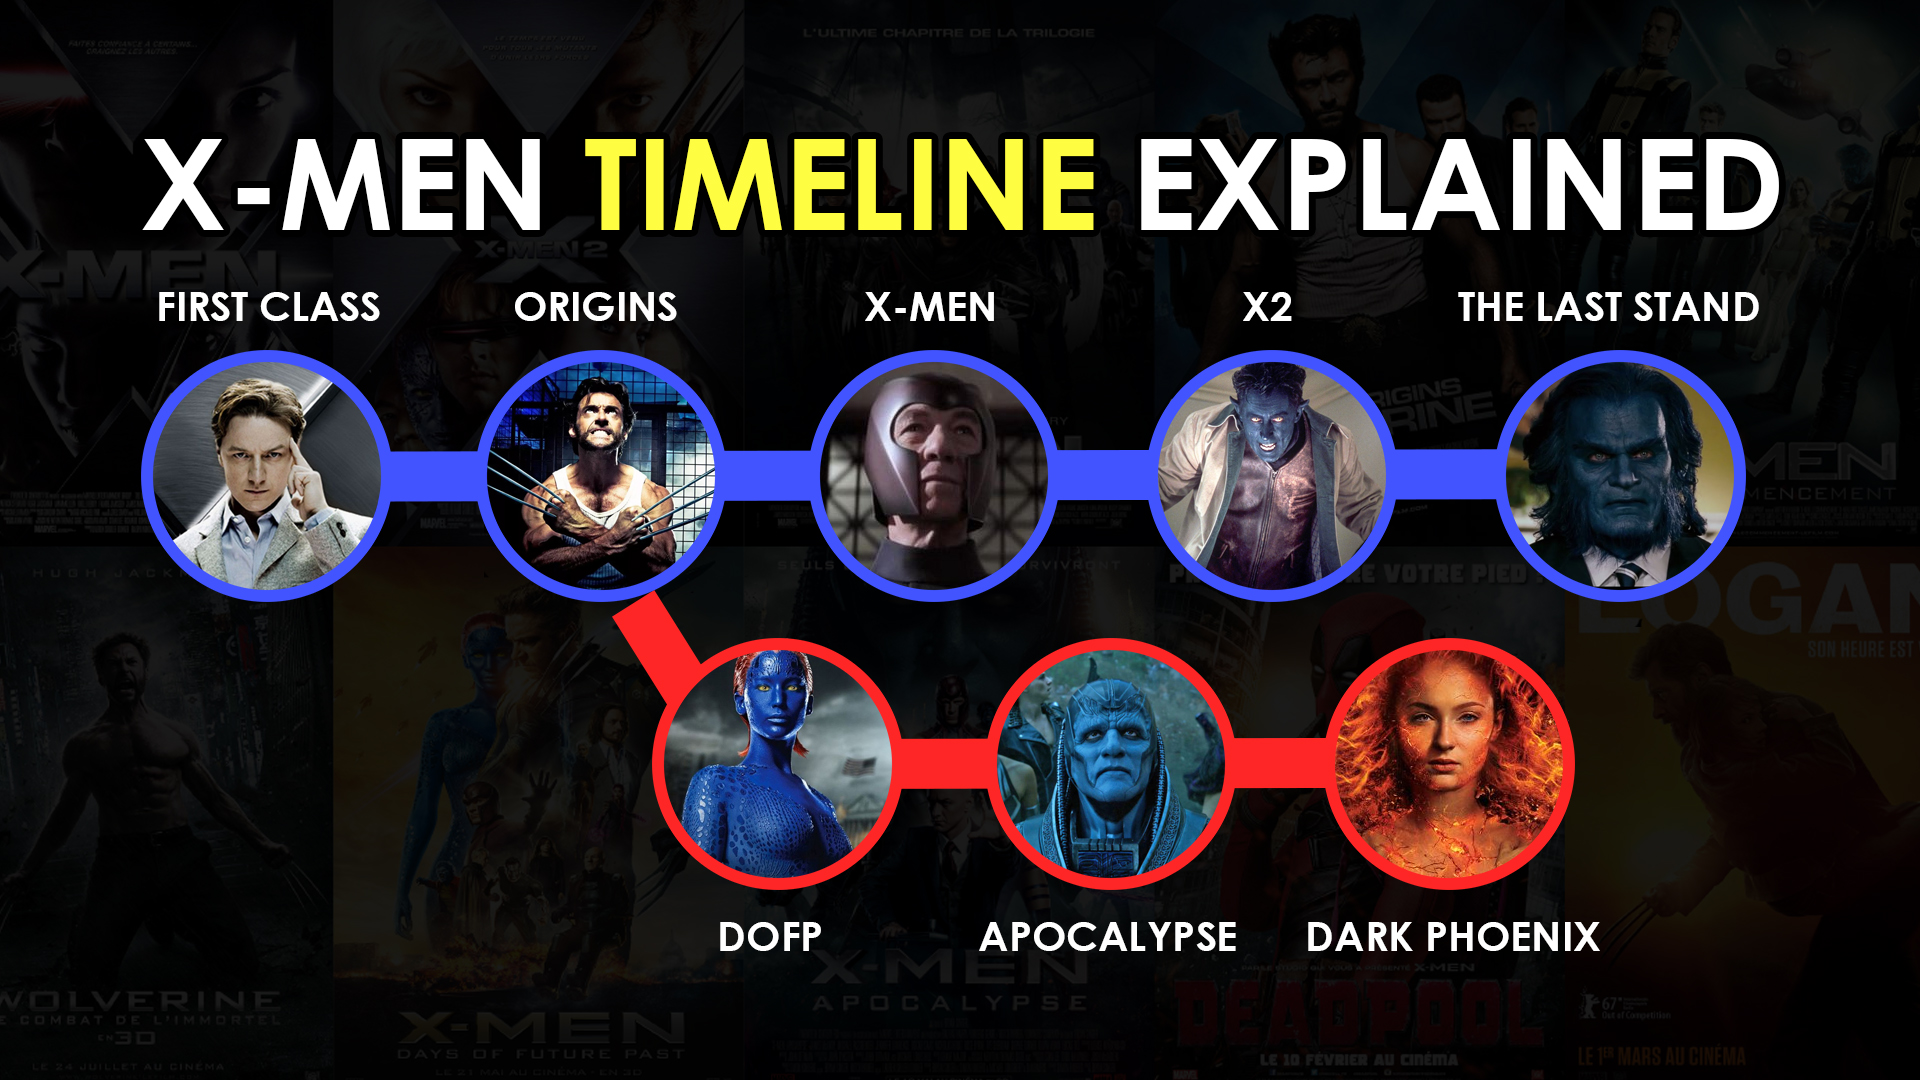 XMen Full Movie Timeline Finally Explained Chronological Order